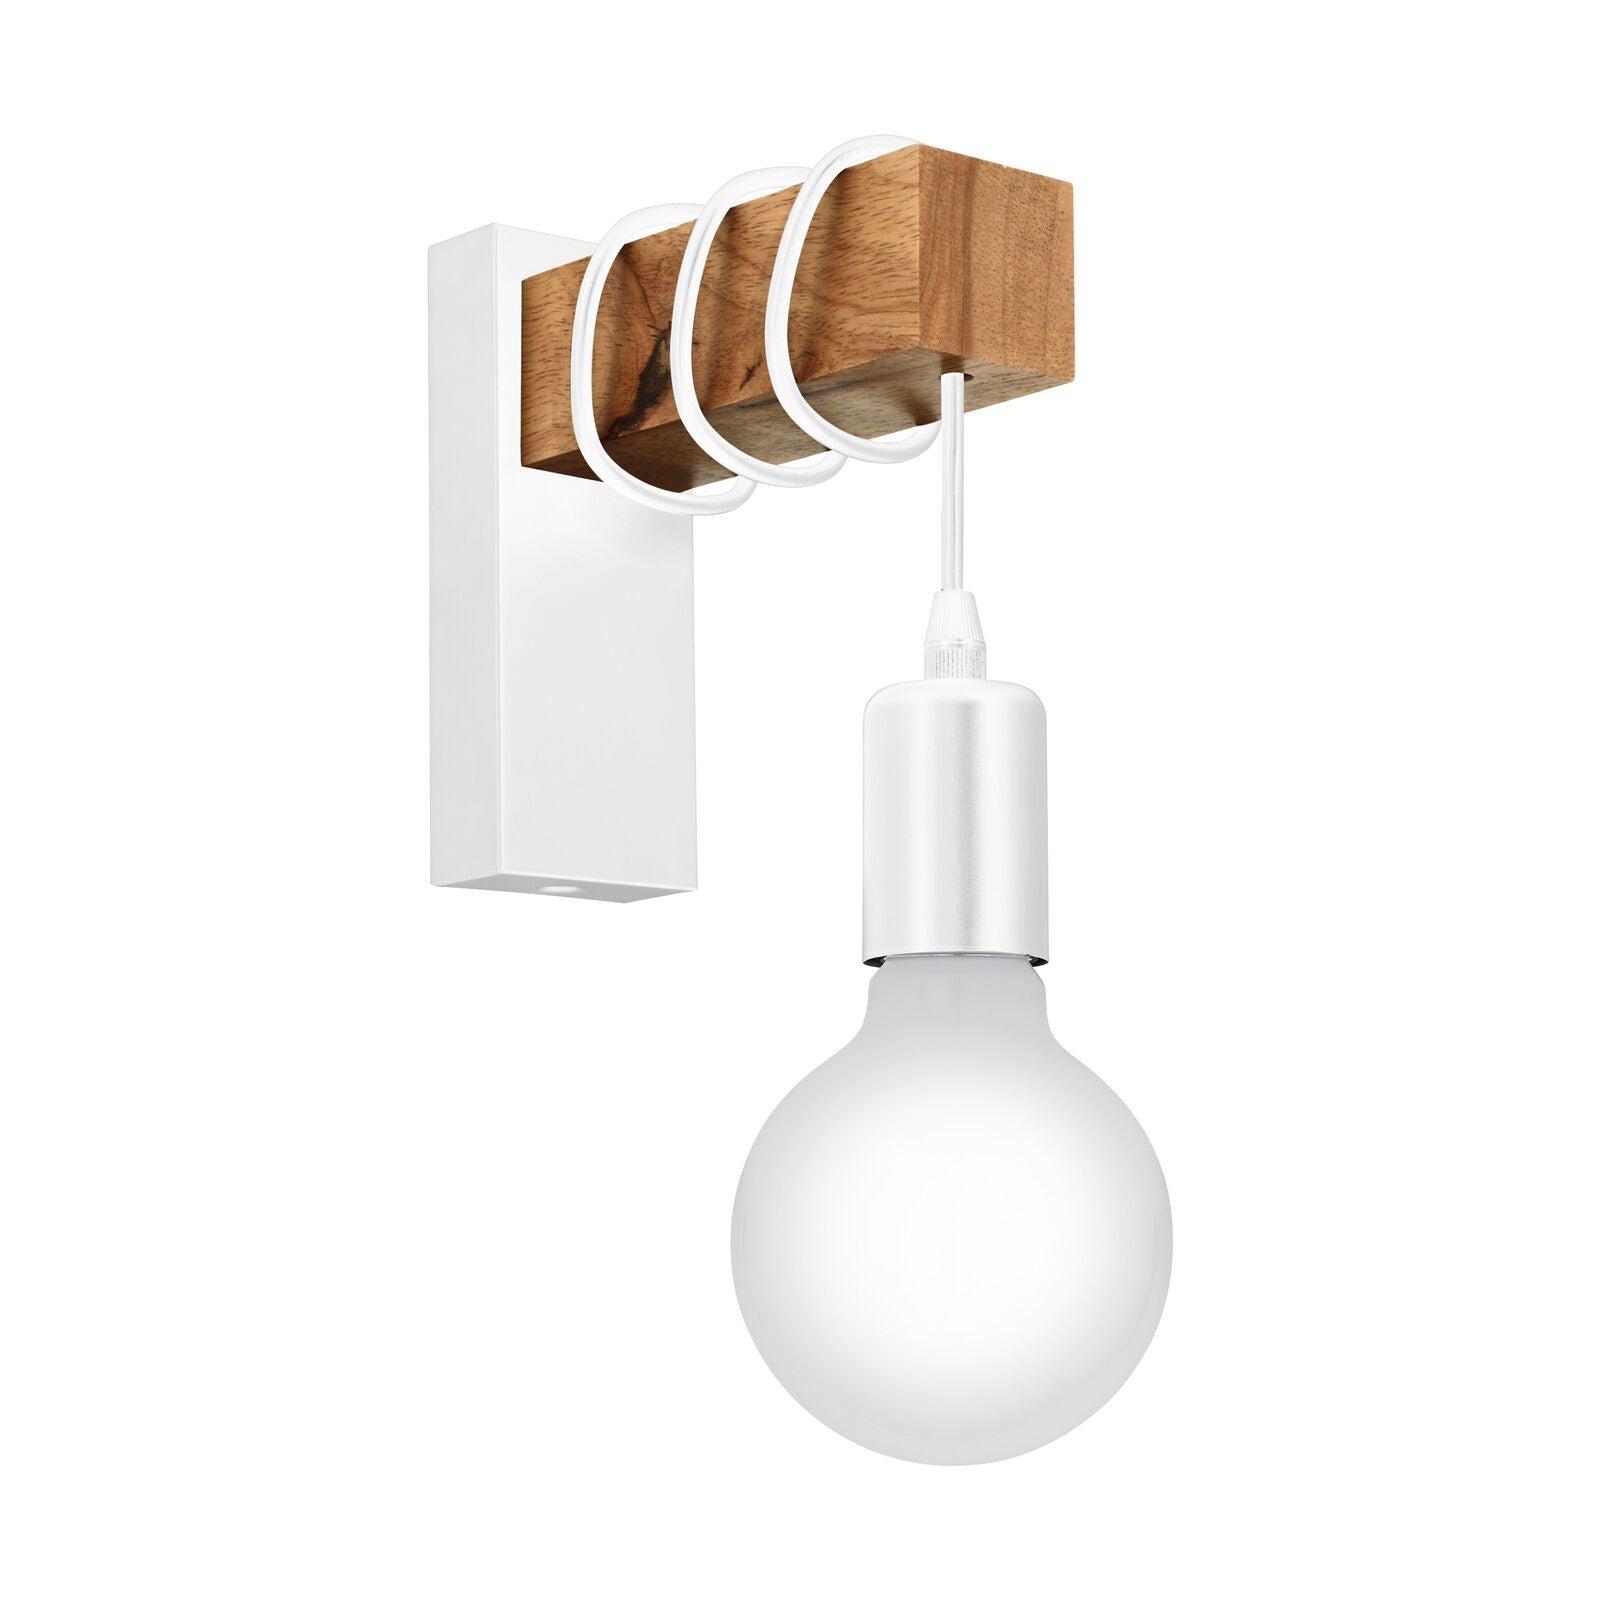 LED Wall Light / Sconce White Plate & Wood Hangman Arm 1 x 10W E27 Bulb